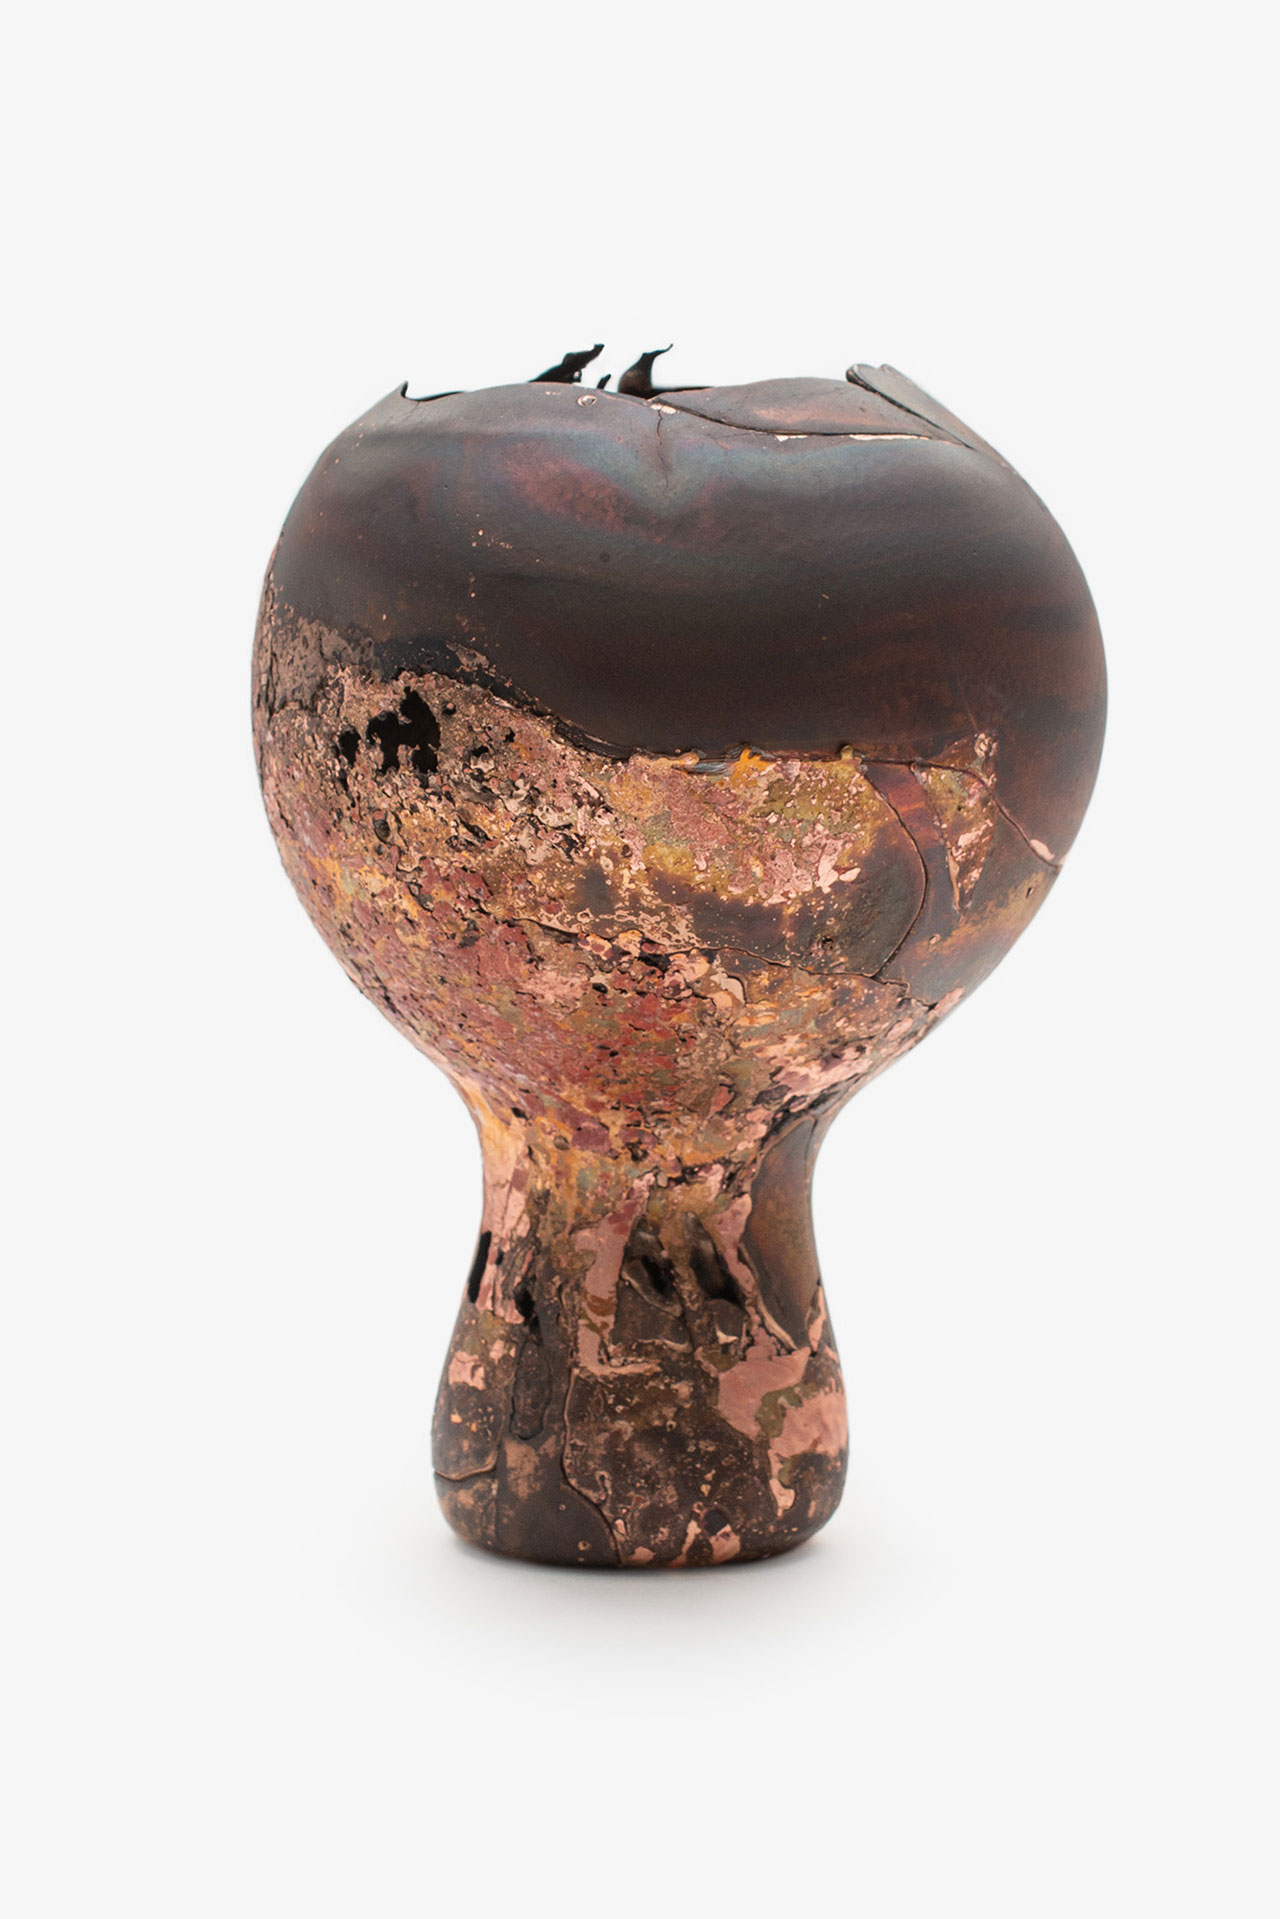 Omer Arbel, OAO113.2020.16, 2020.
21 x 15 x 15 cm.
Copper alloy cast in glass.
Courtesy Carwan gallery.